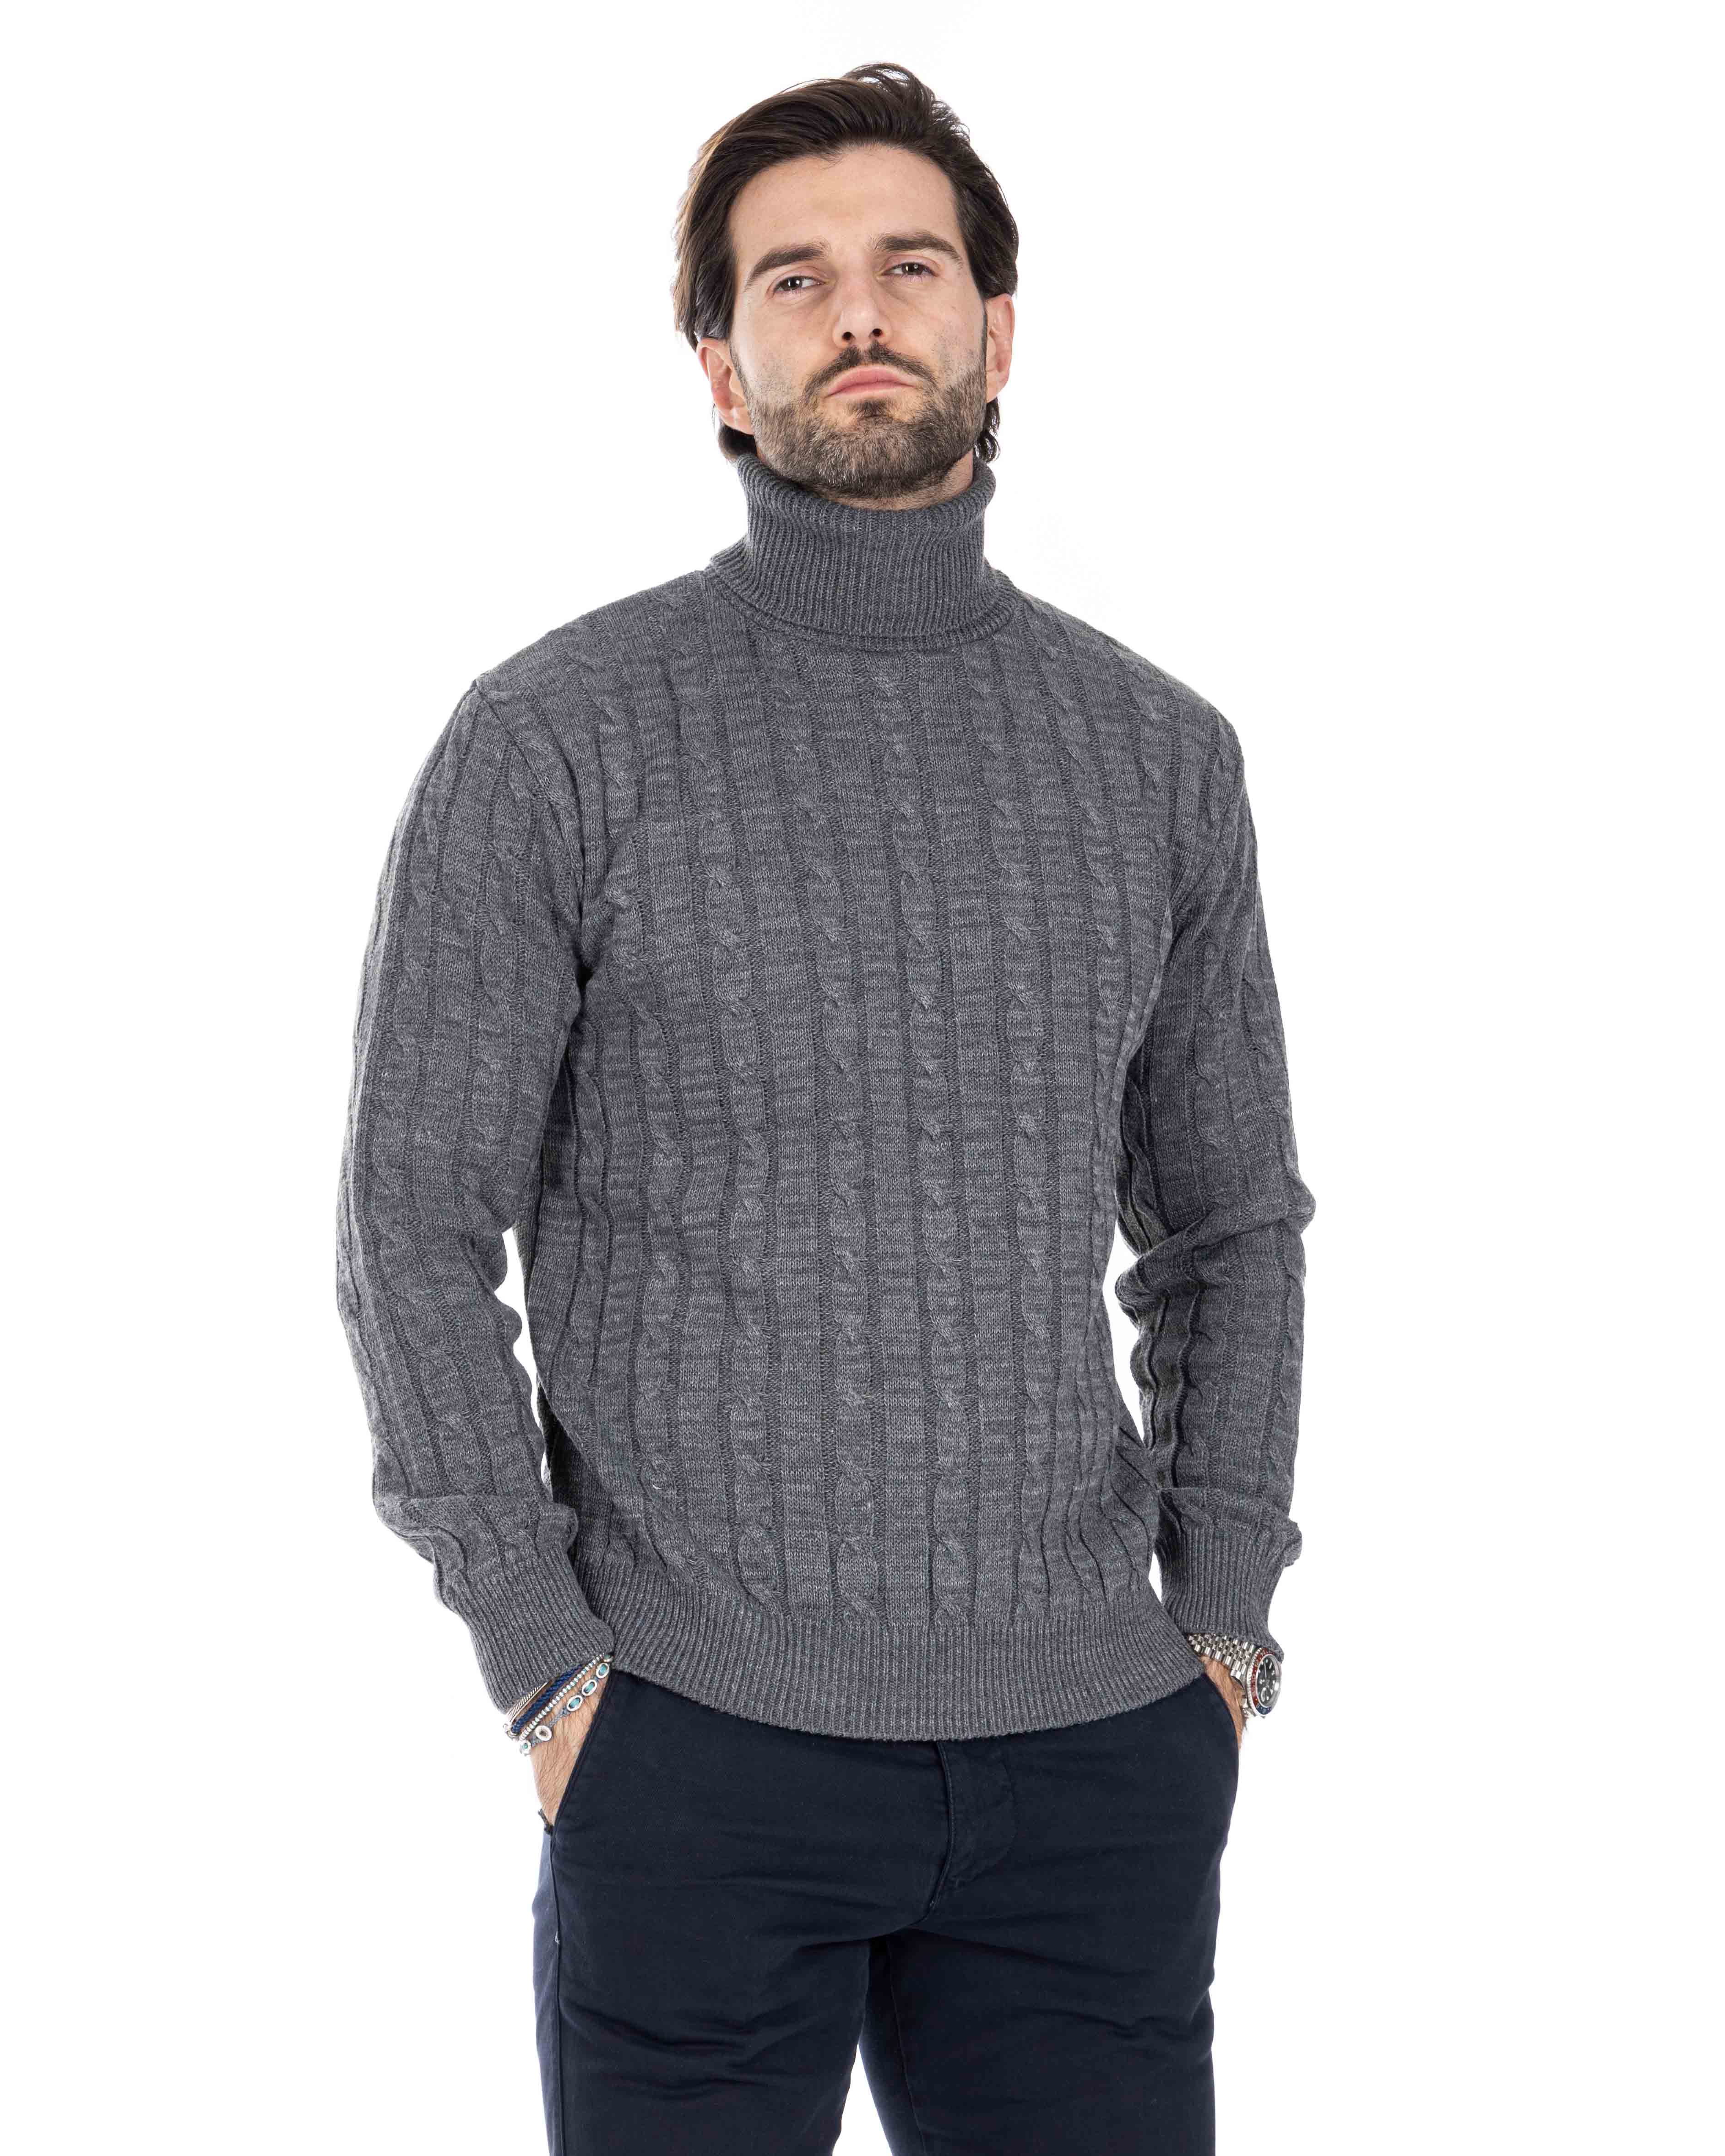 Crovie - maglione grigio con trecce collo alto